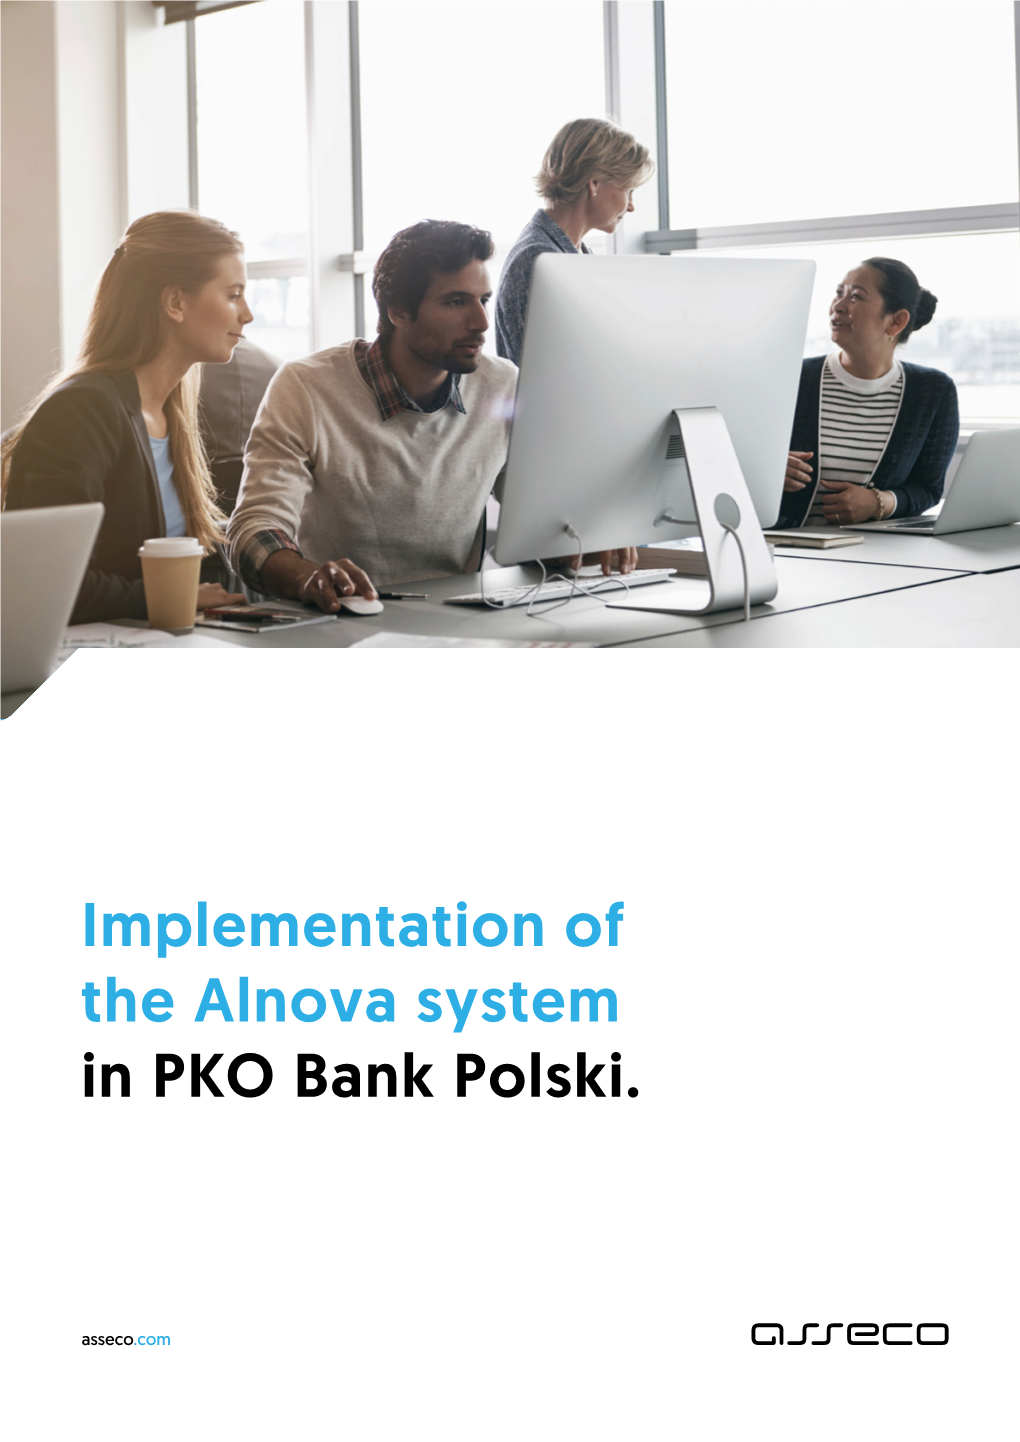 Implementation of the Alnova System in PKO Bank Polski